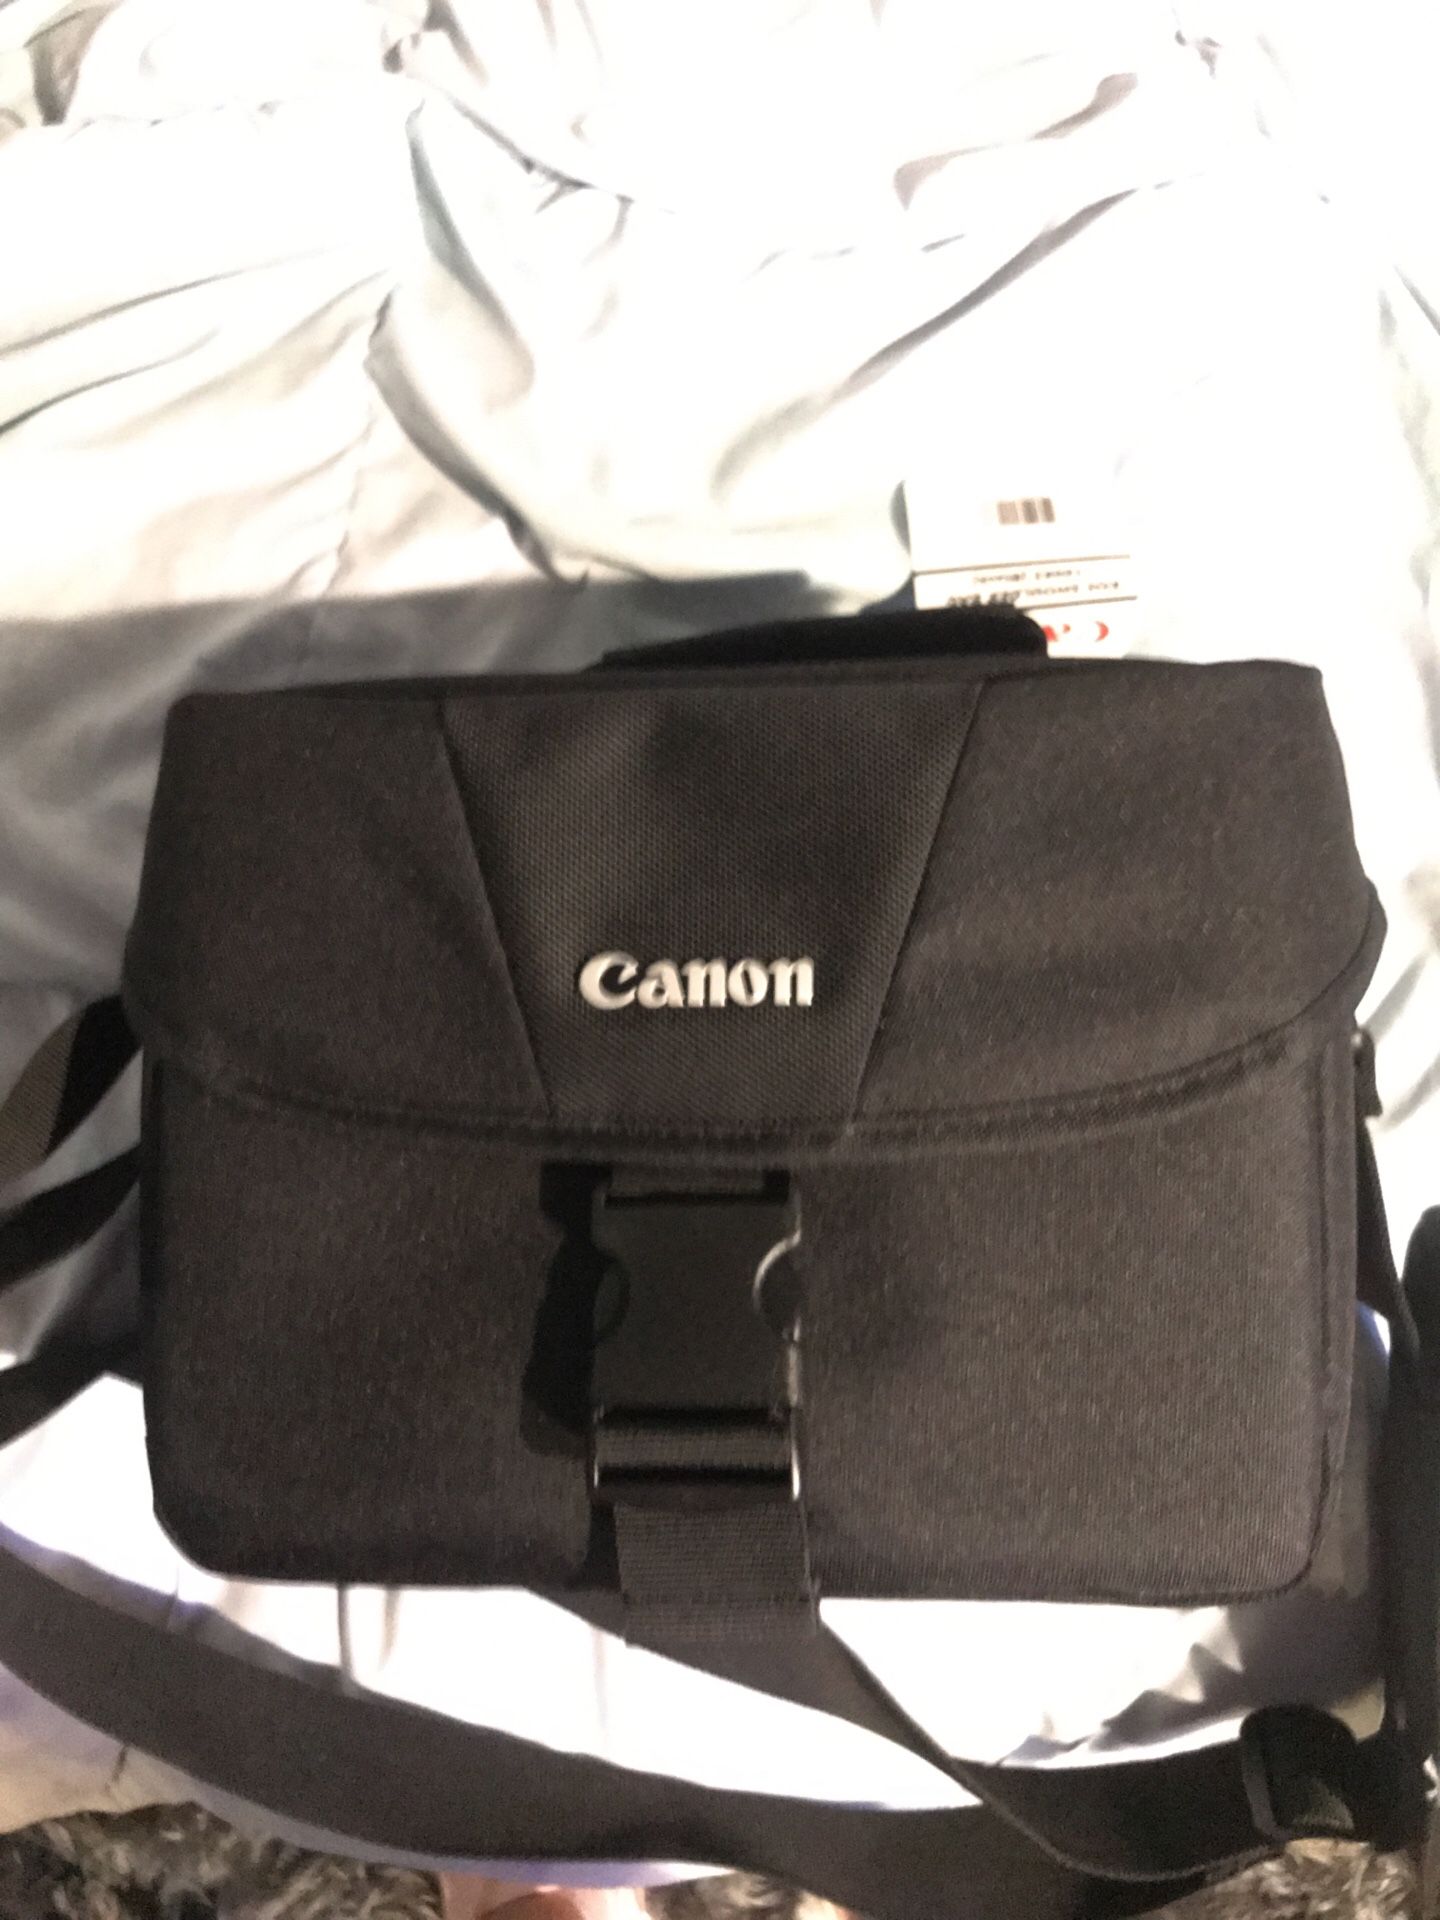 New canon camera bag